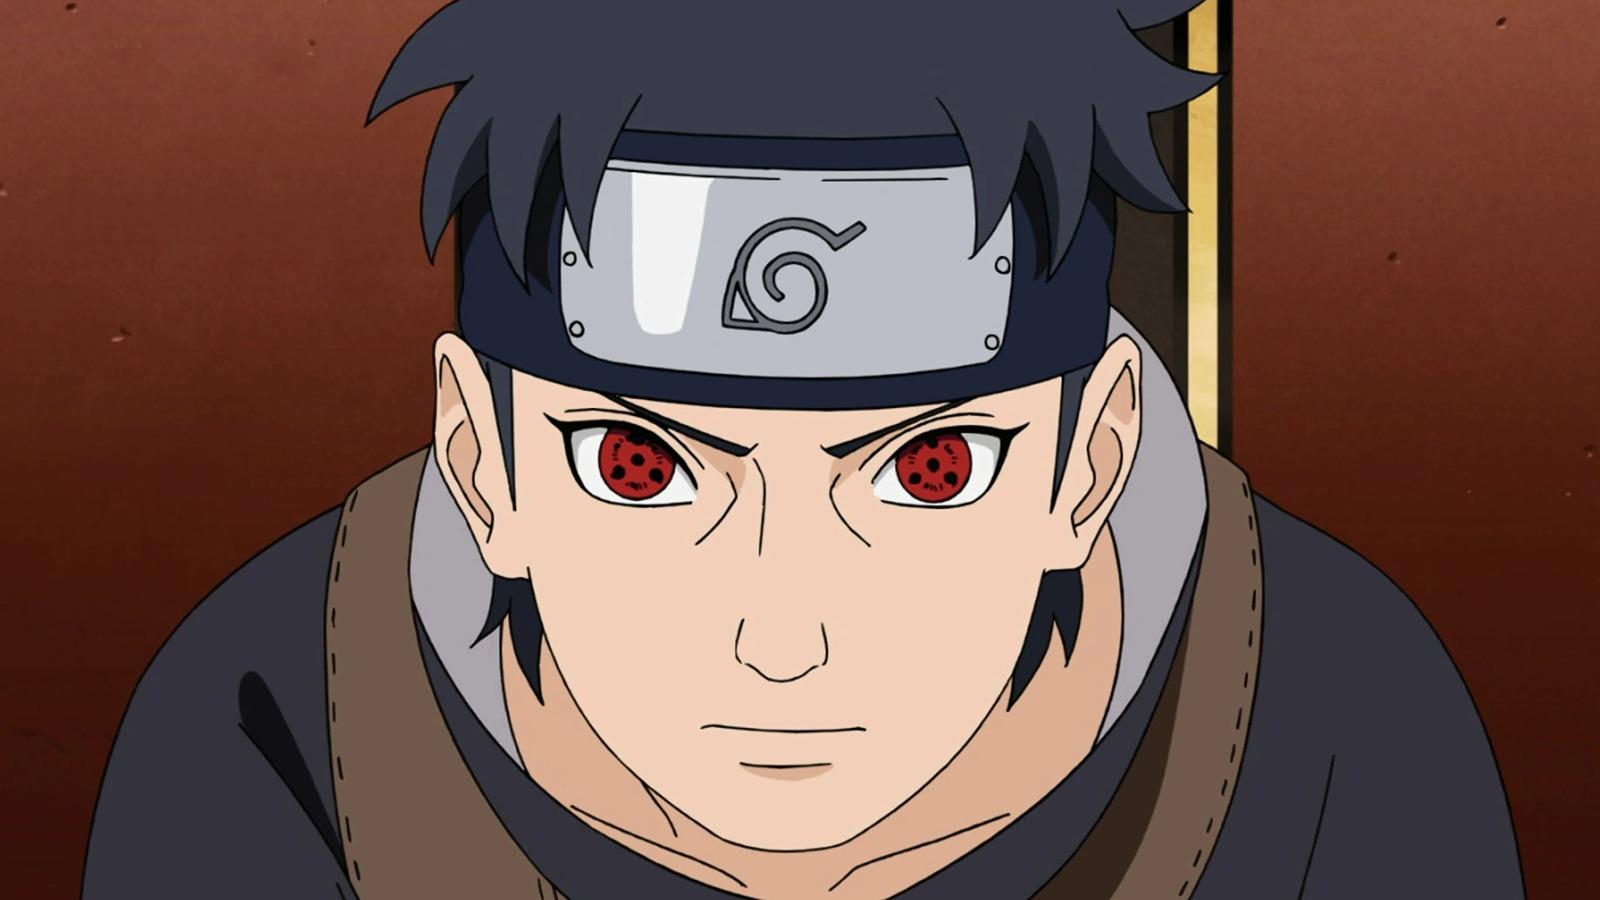 An image of Shisui Uchiha from Naruto